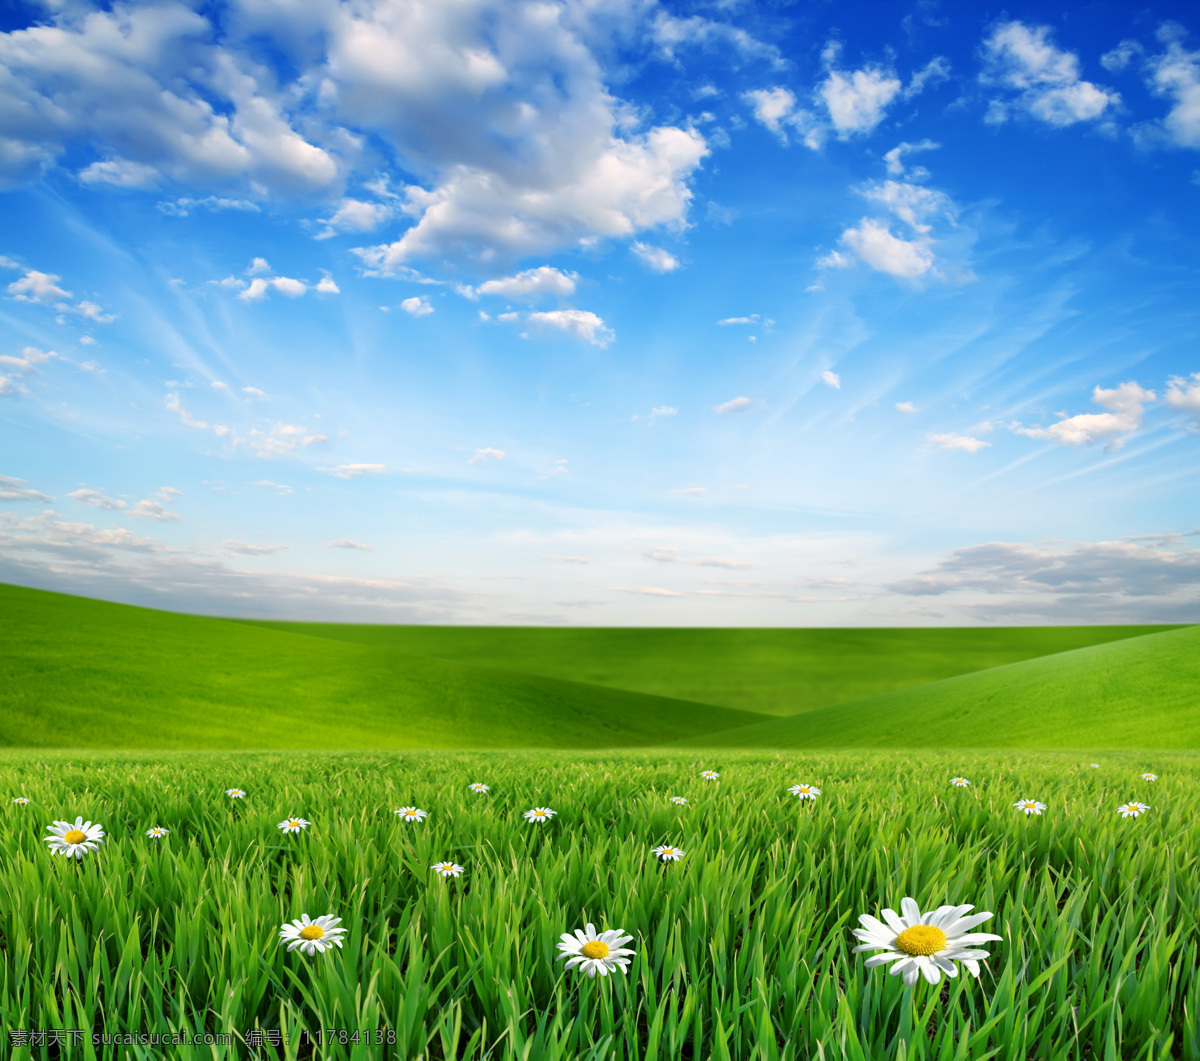 蓝天 白云 下 草原 美丽风景 景色 美景 蓝天白云 鲜花 野花 草地 平原 青草 绿地 自然风景 自然景观 绿色